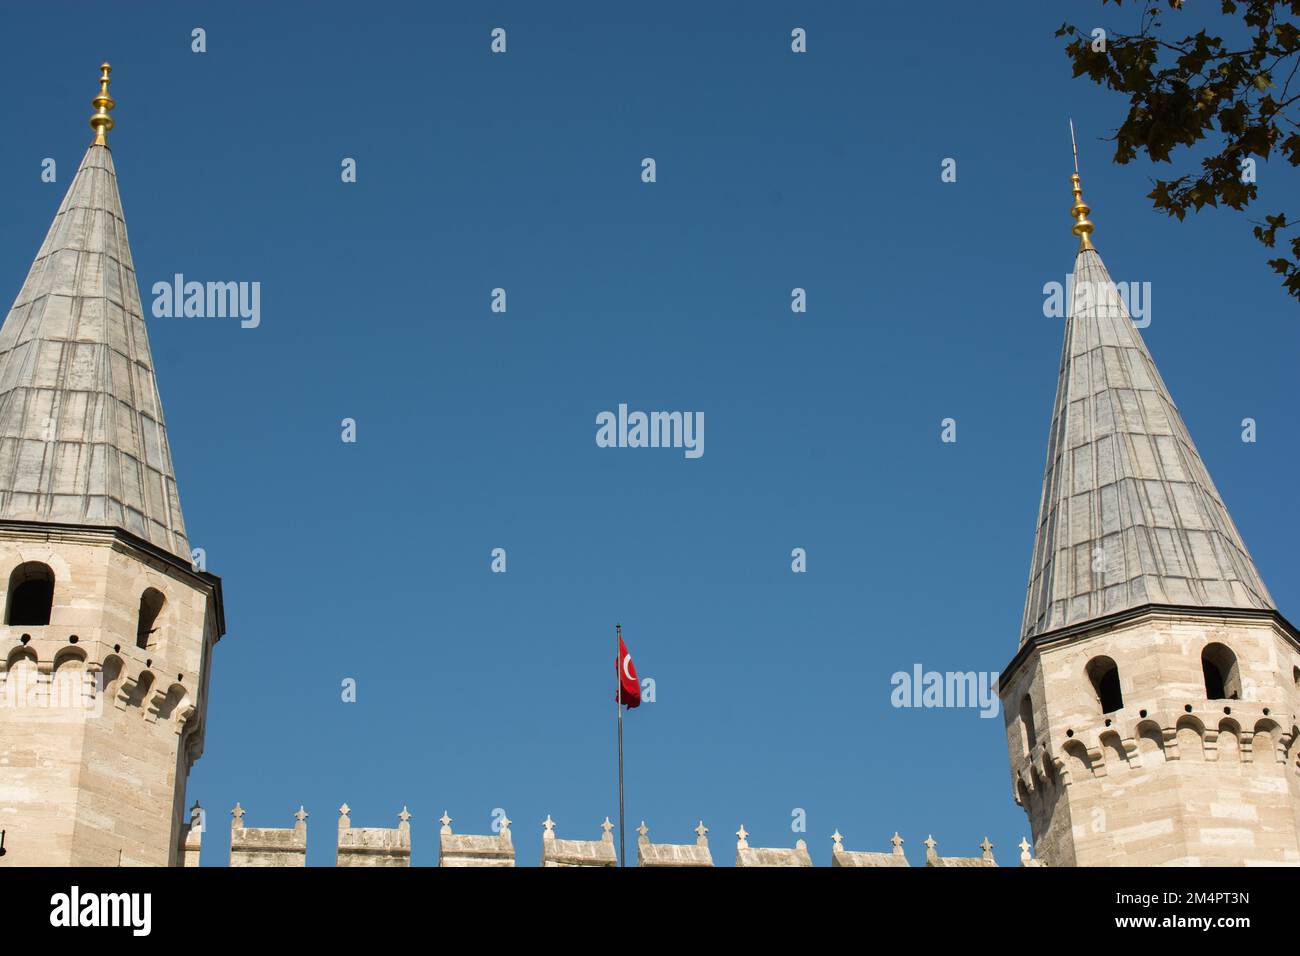 Schönes Beispiel der osmanischen Türkisch tower Architektur Meisterwerke Stockfoto